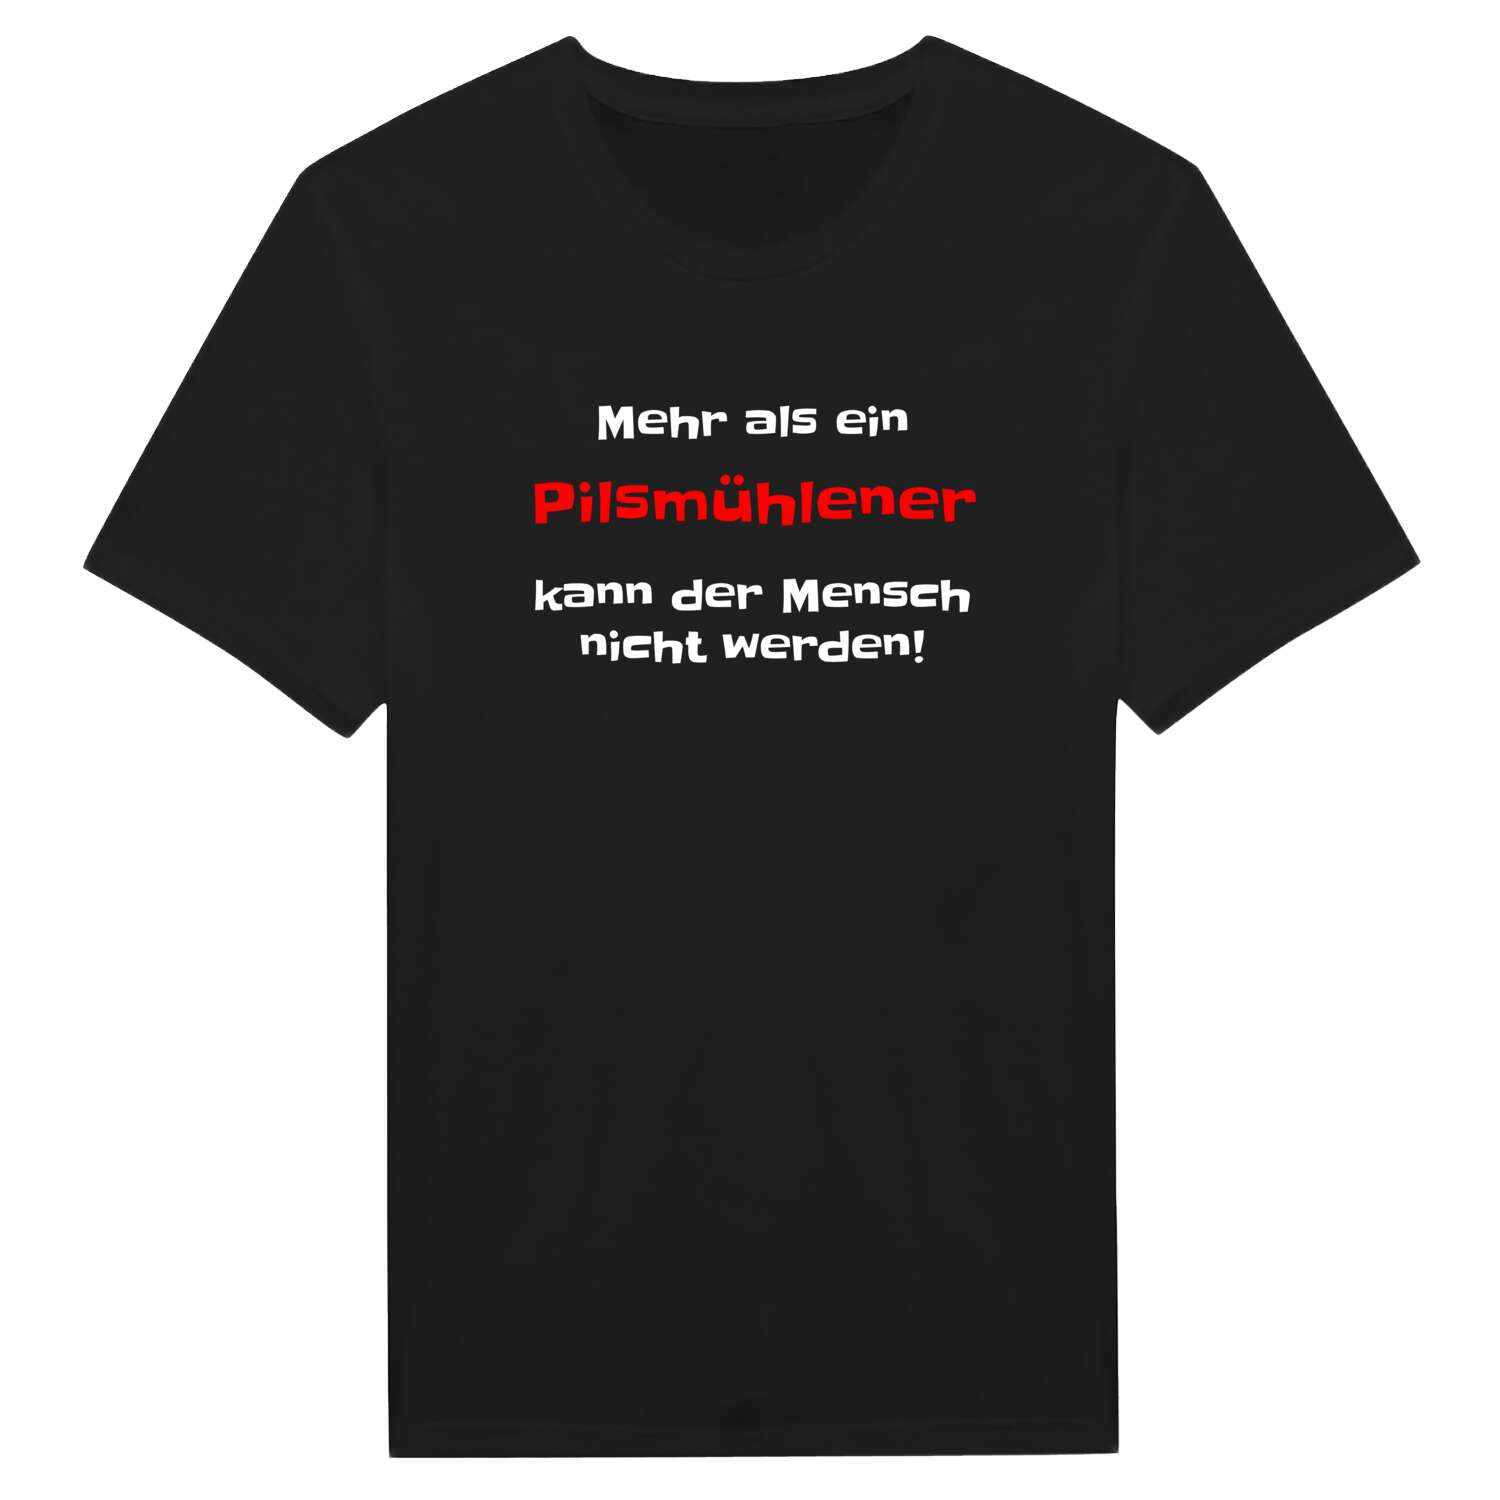 Pilsmühle T-Shirt »Mehr als ein«